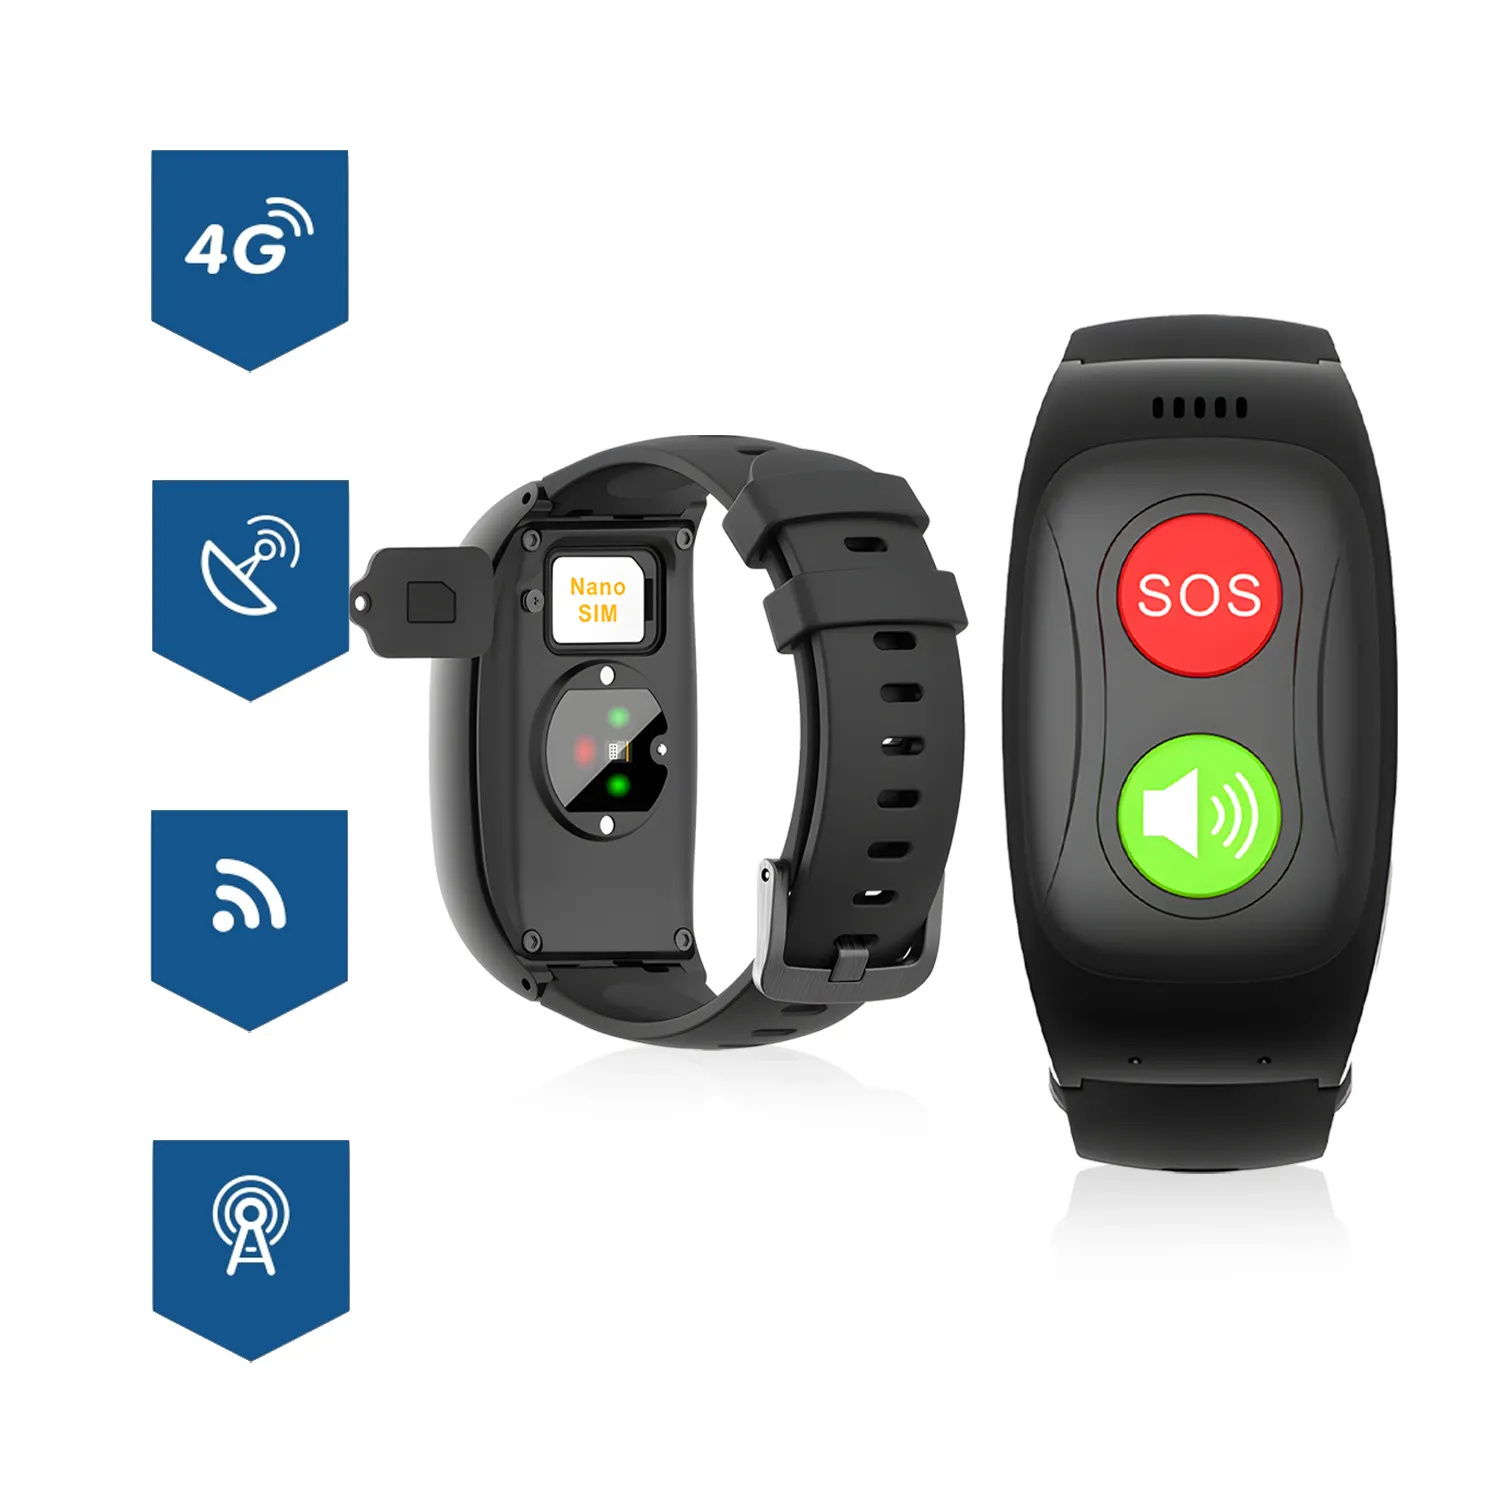 Acil yardım düğmesi VH67 2G SOS kişisel alarmlı GPS takip cihazı İzle aile bakım kişisel Alarm cihazı yaşlılar için